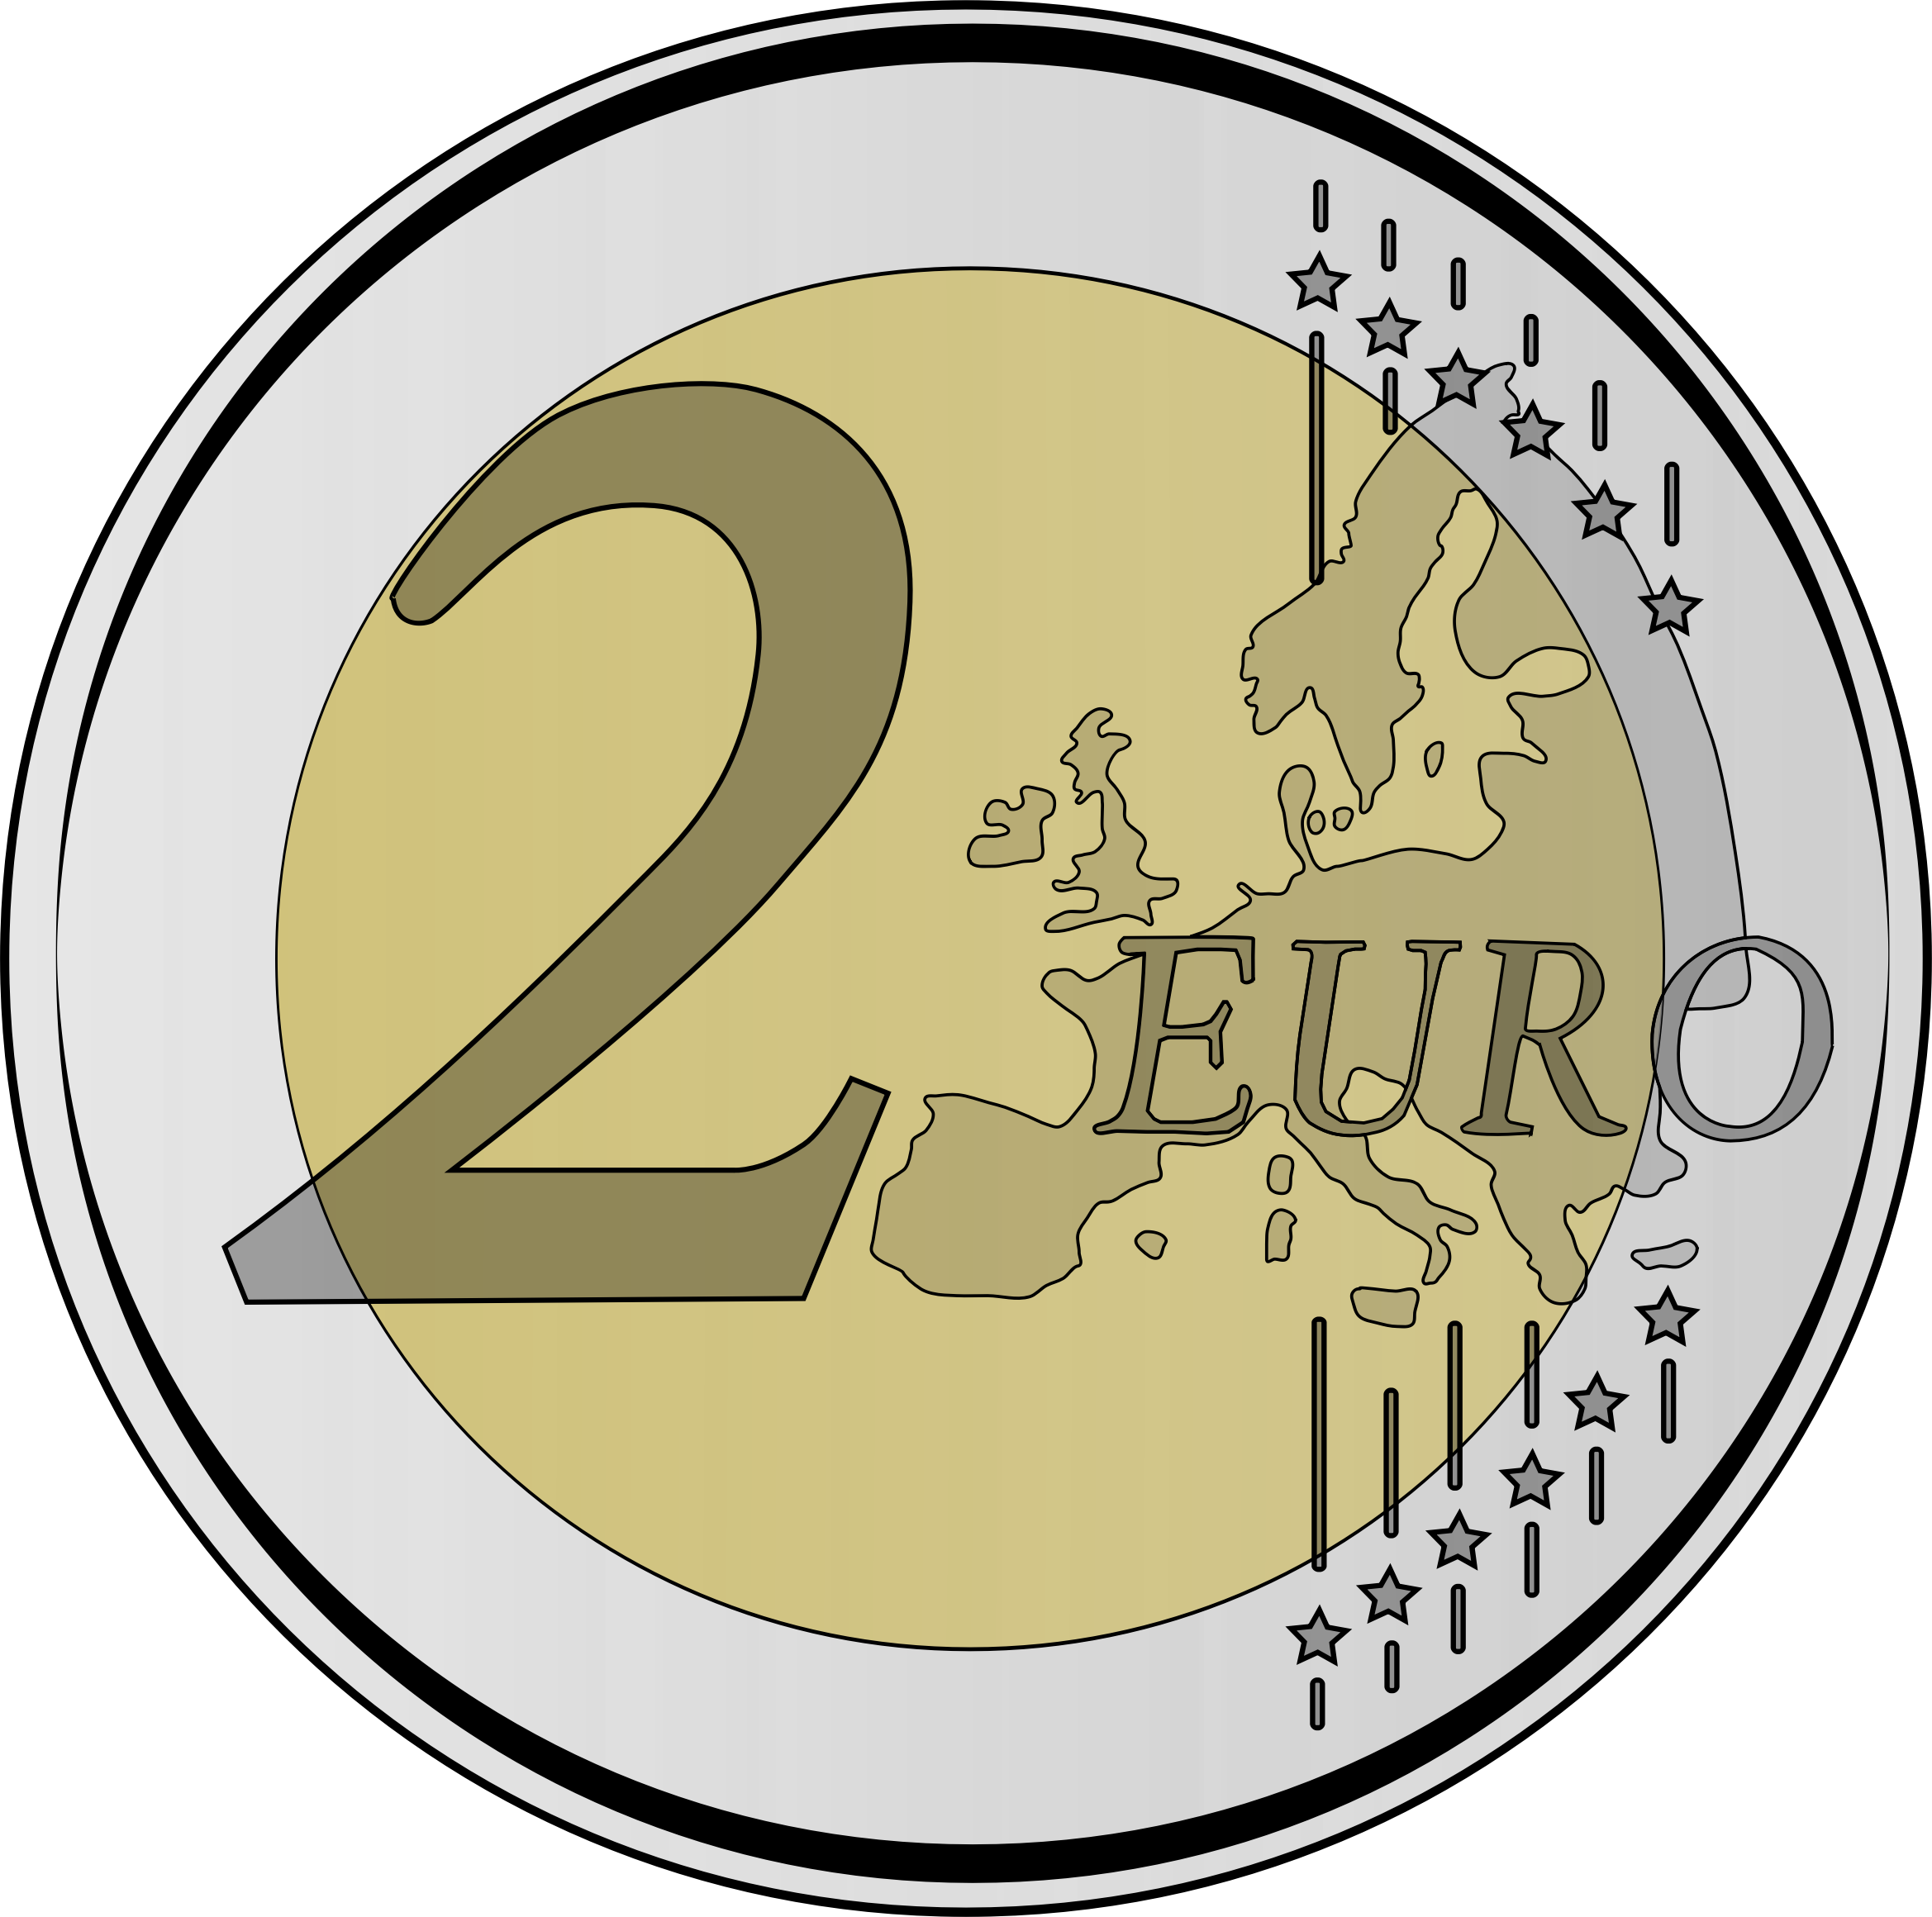 Euro Download Free Image PNG Image